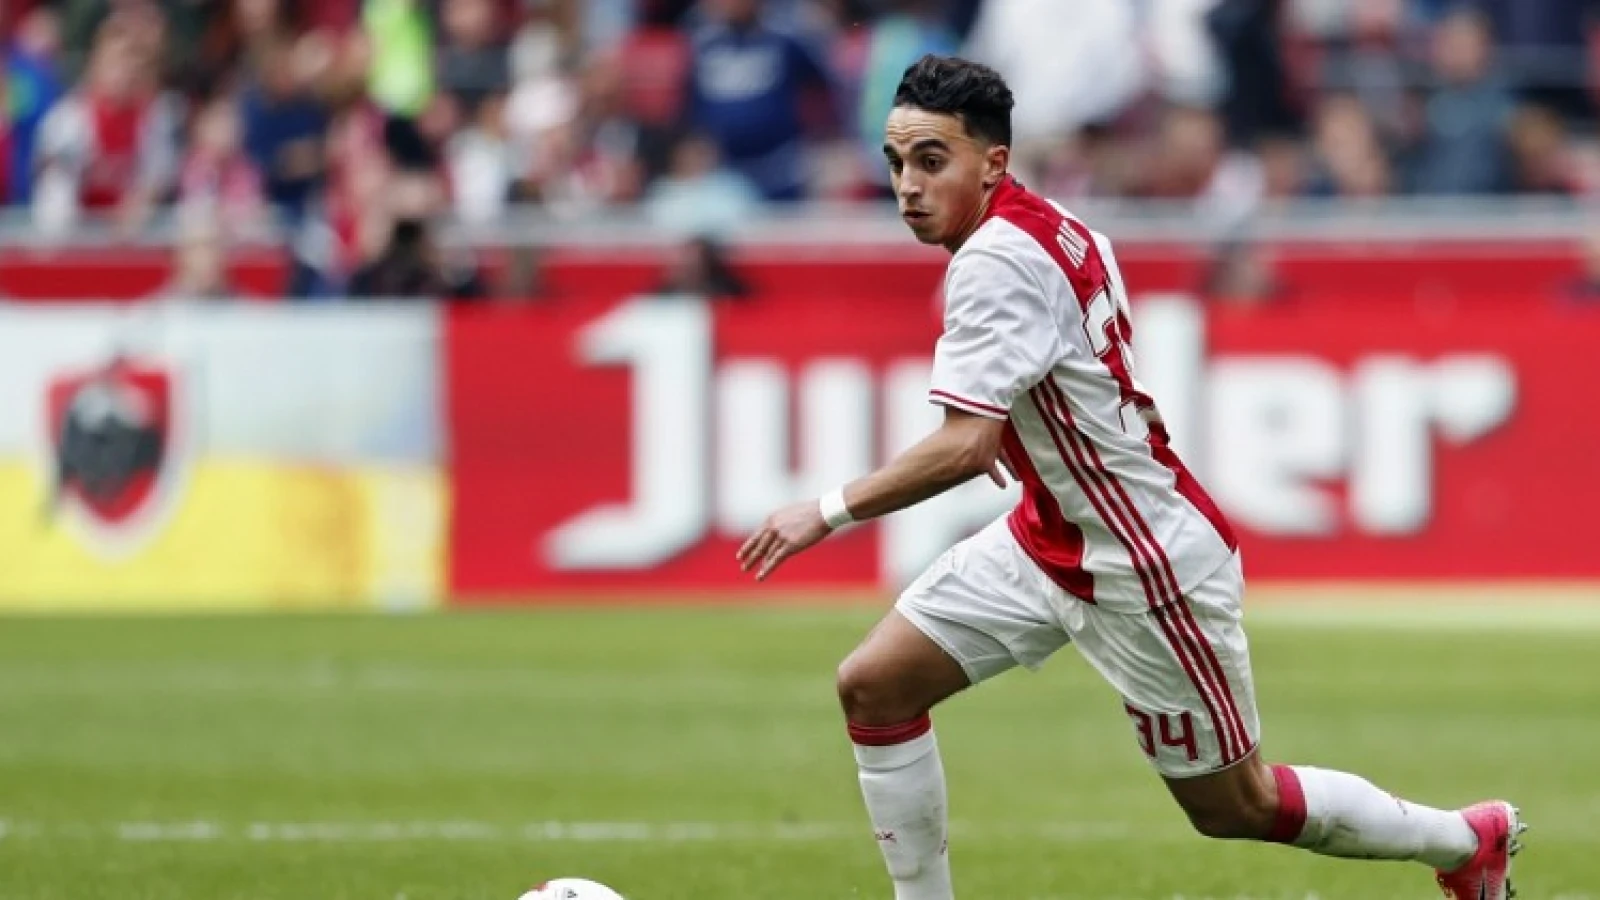 Vreselijk nieuws voor Ajax-speler Nouri na hartritmestoornissen